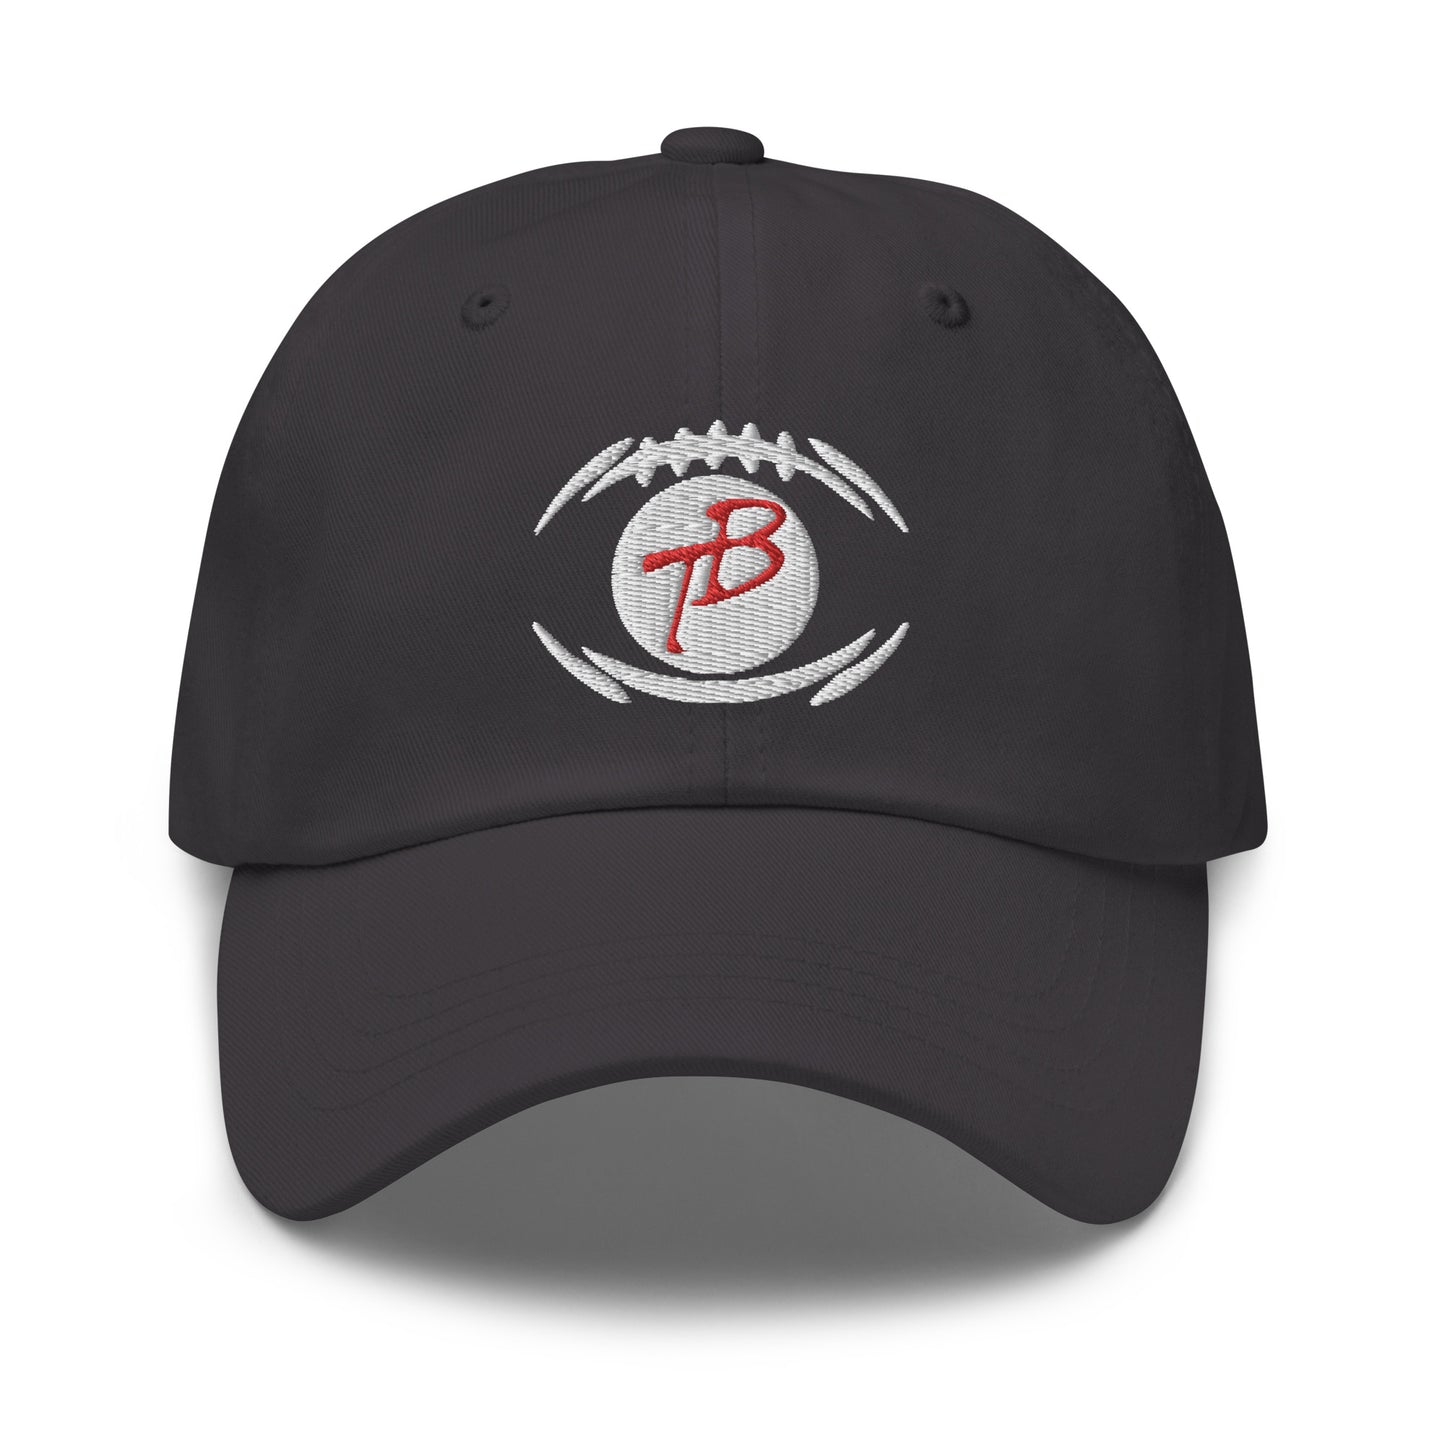 Terry bradshaw hat / Tb12 / Tom Brady Dad hat